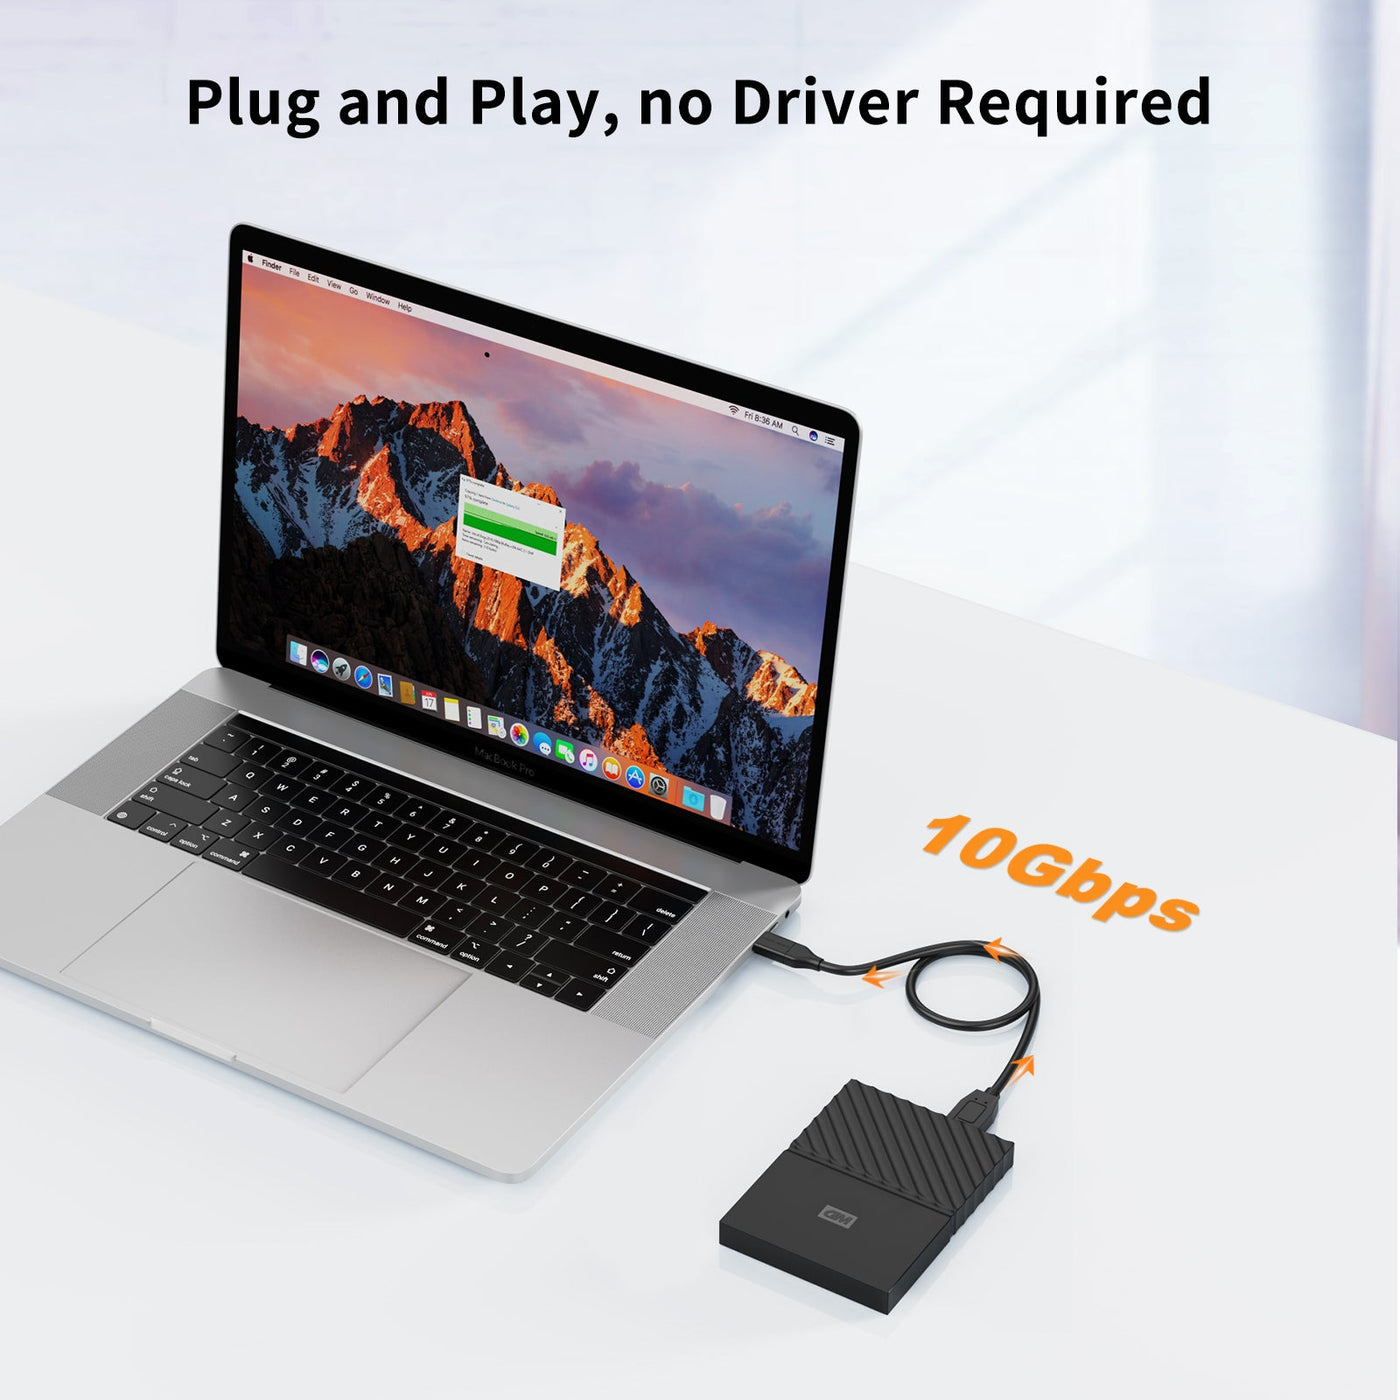 USB 3.0 Micro B plug and play